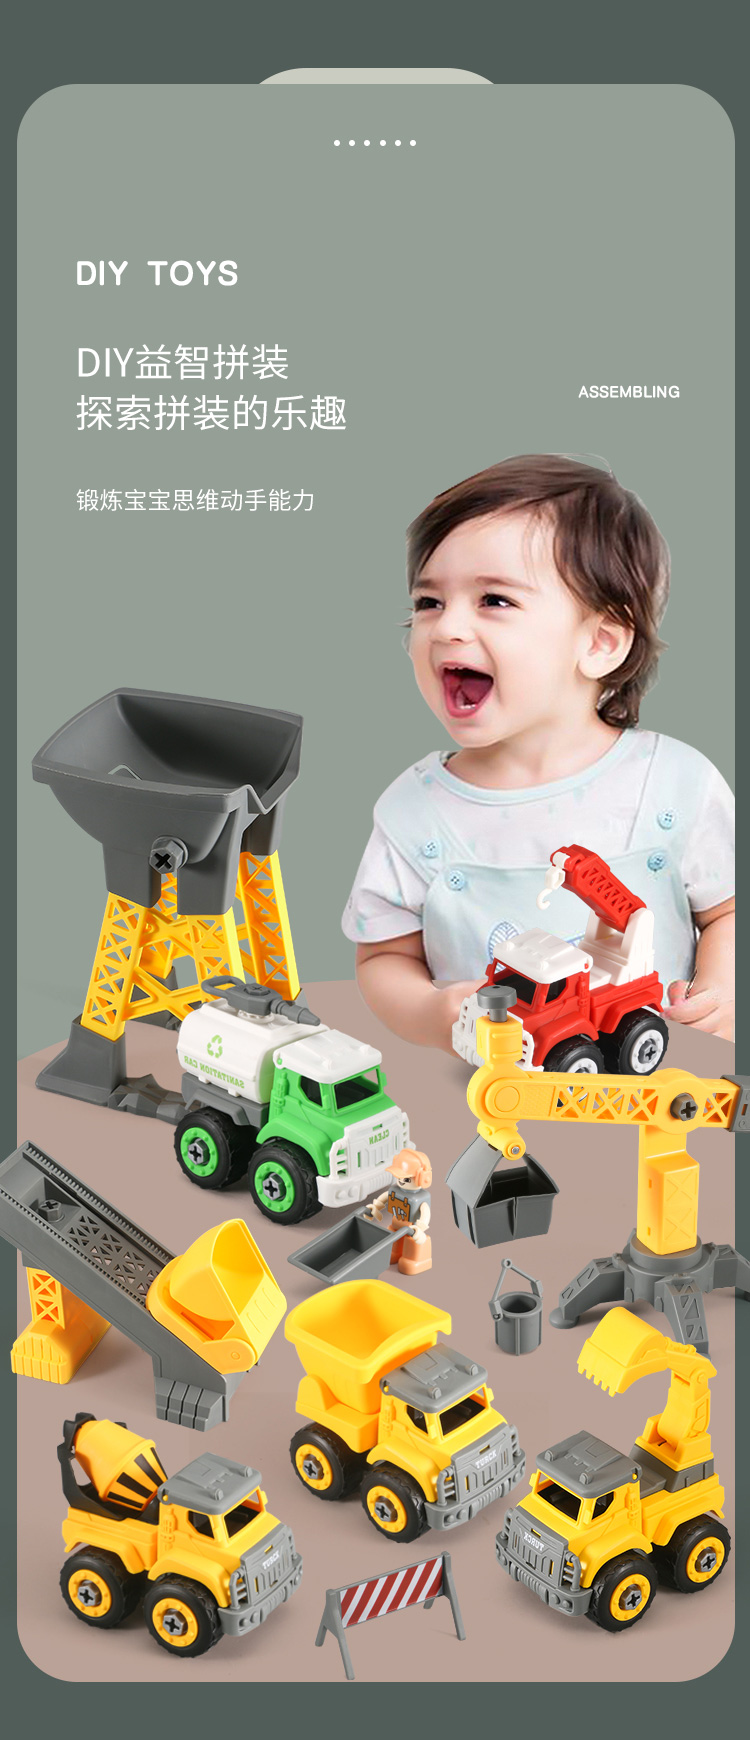 儿童拧螺丝钉玩具拆装工程车修理工具套装组装可拆卸汽车动手能力